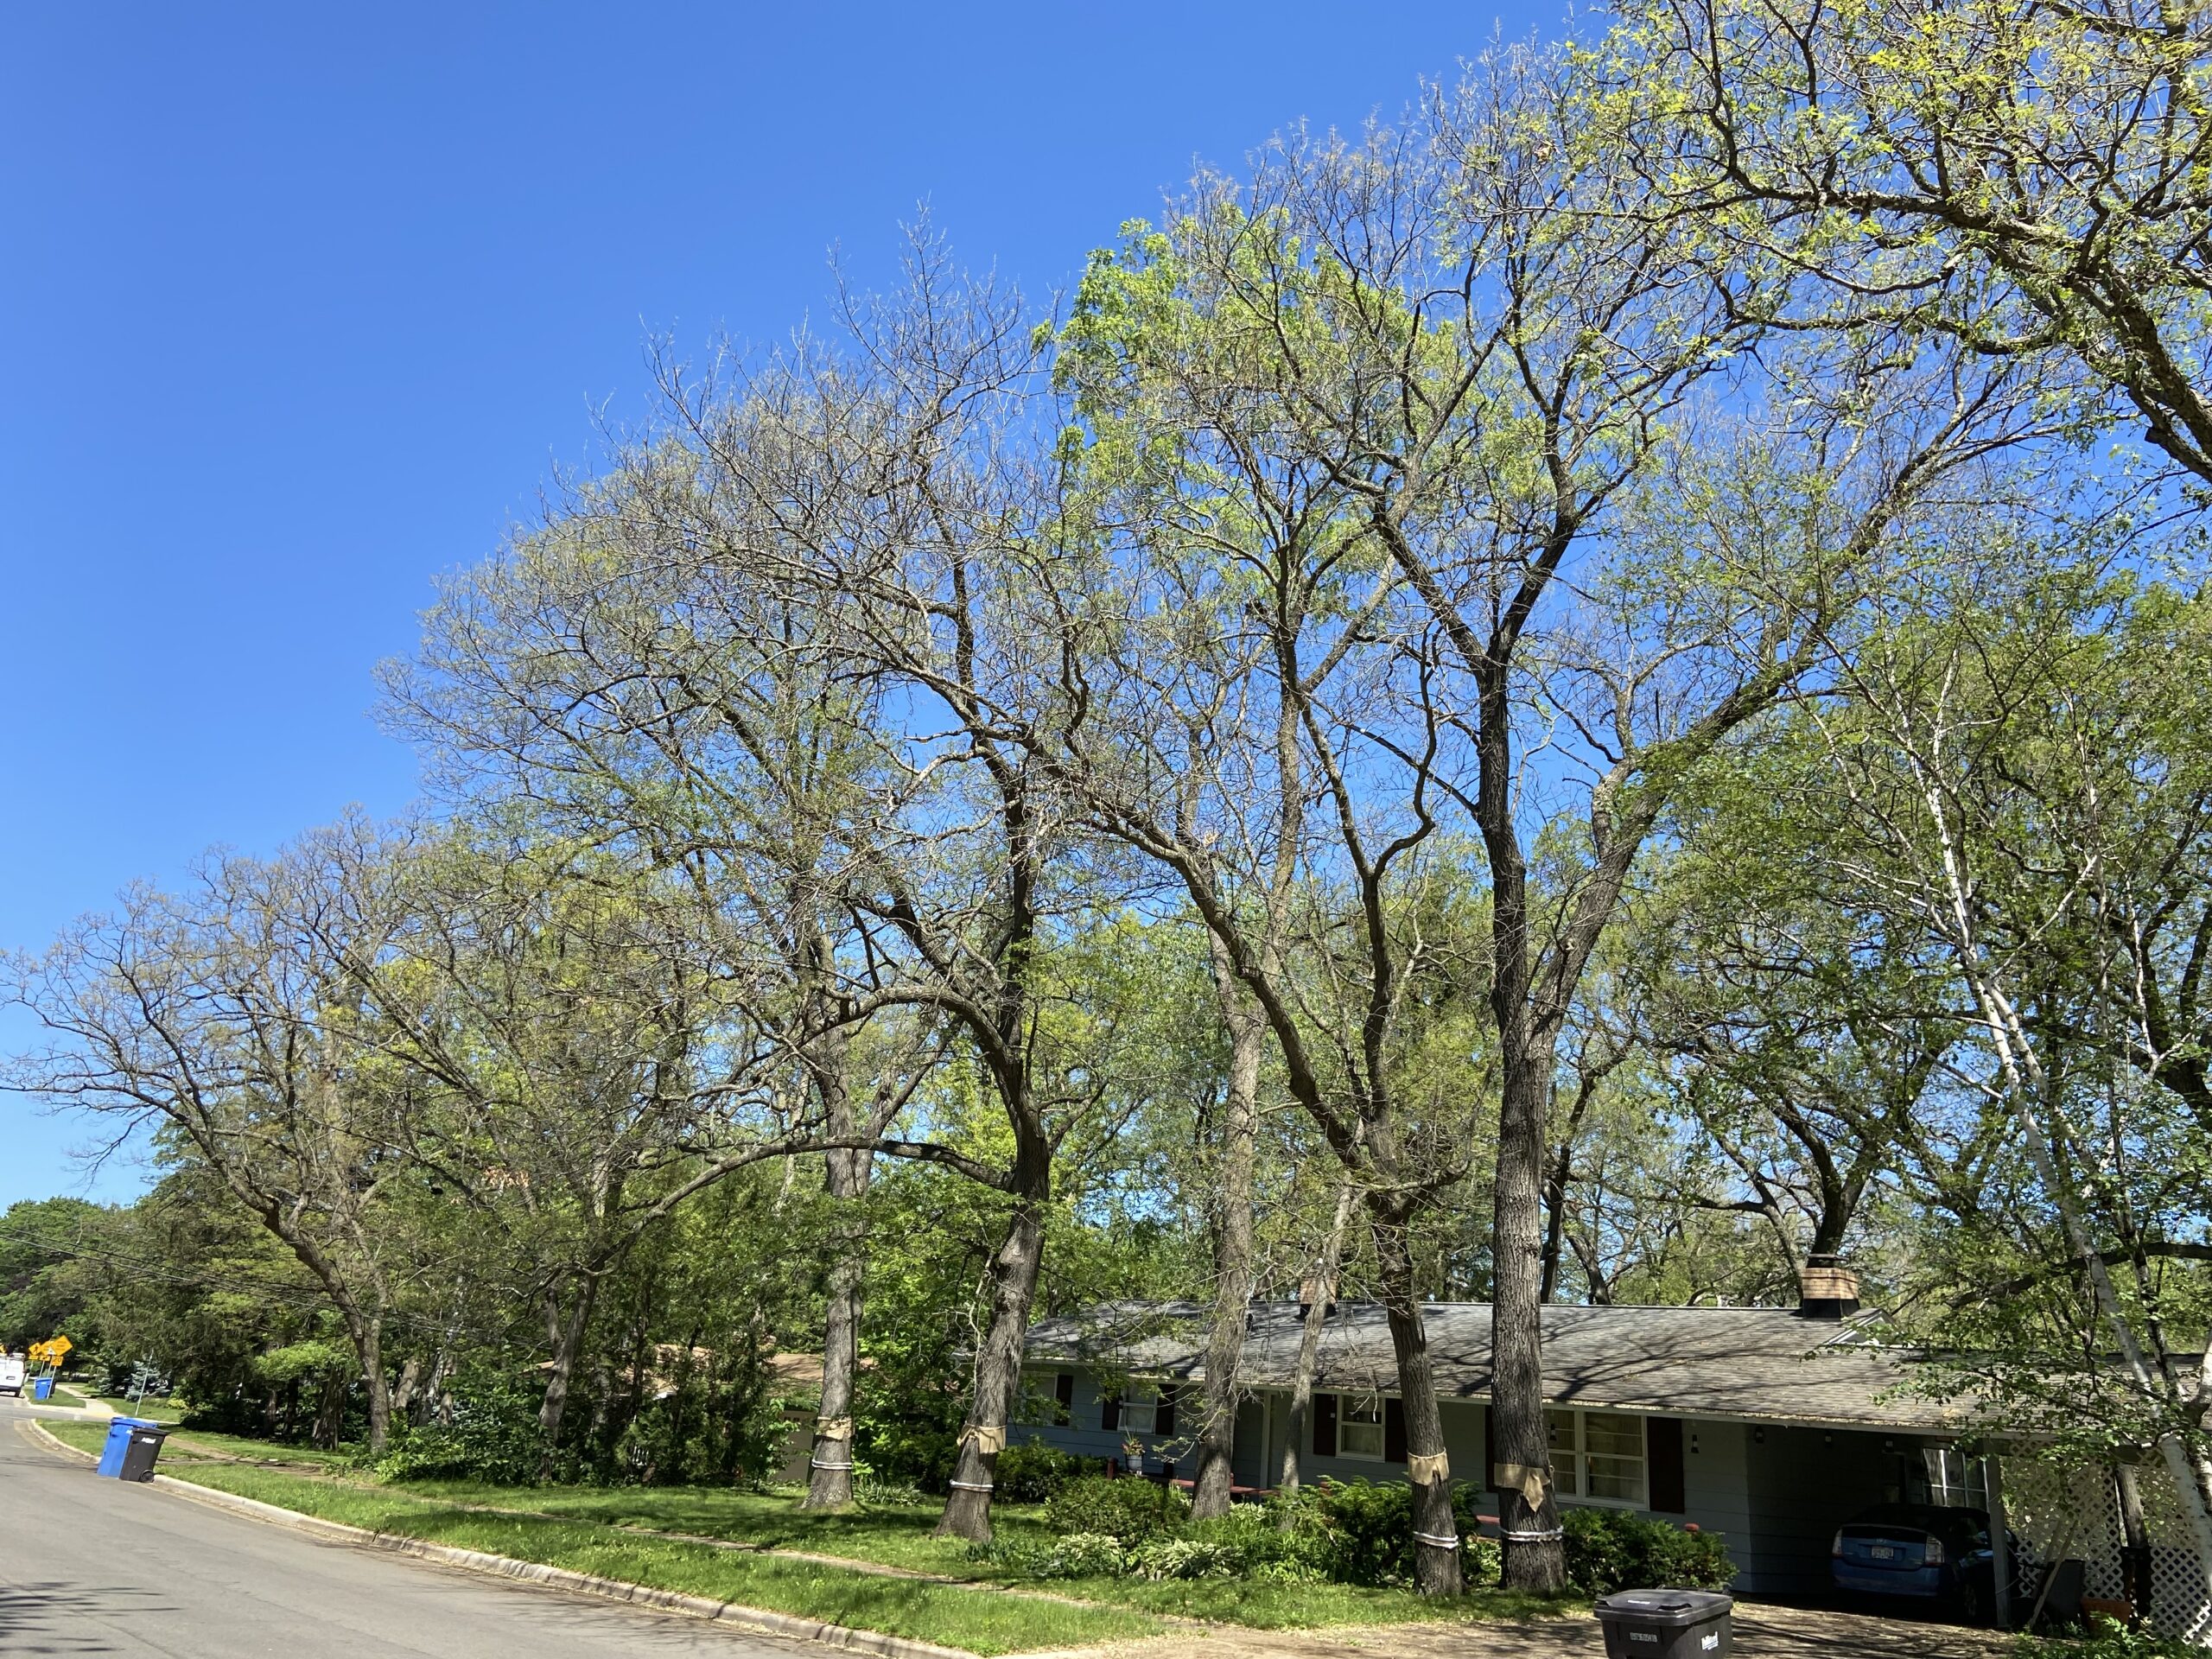 Large, defoliated yard trees along road in neighborhood.